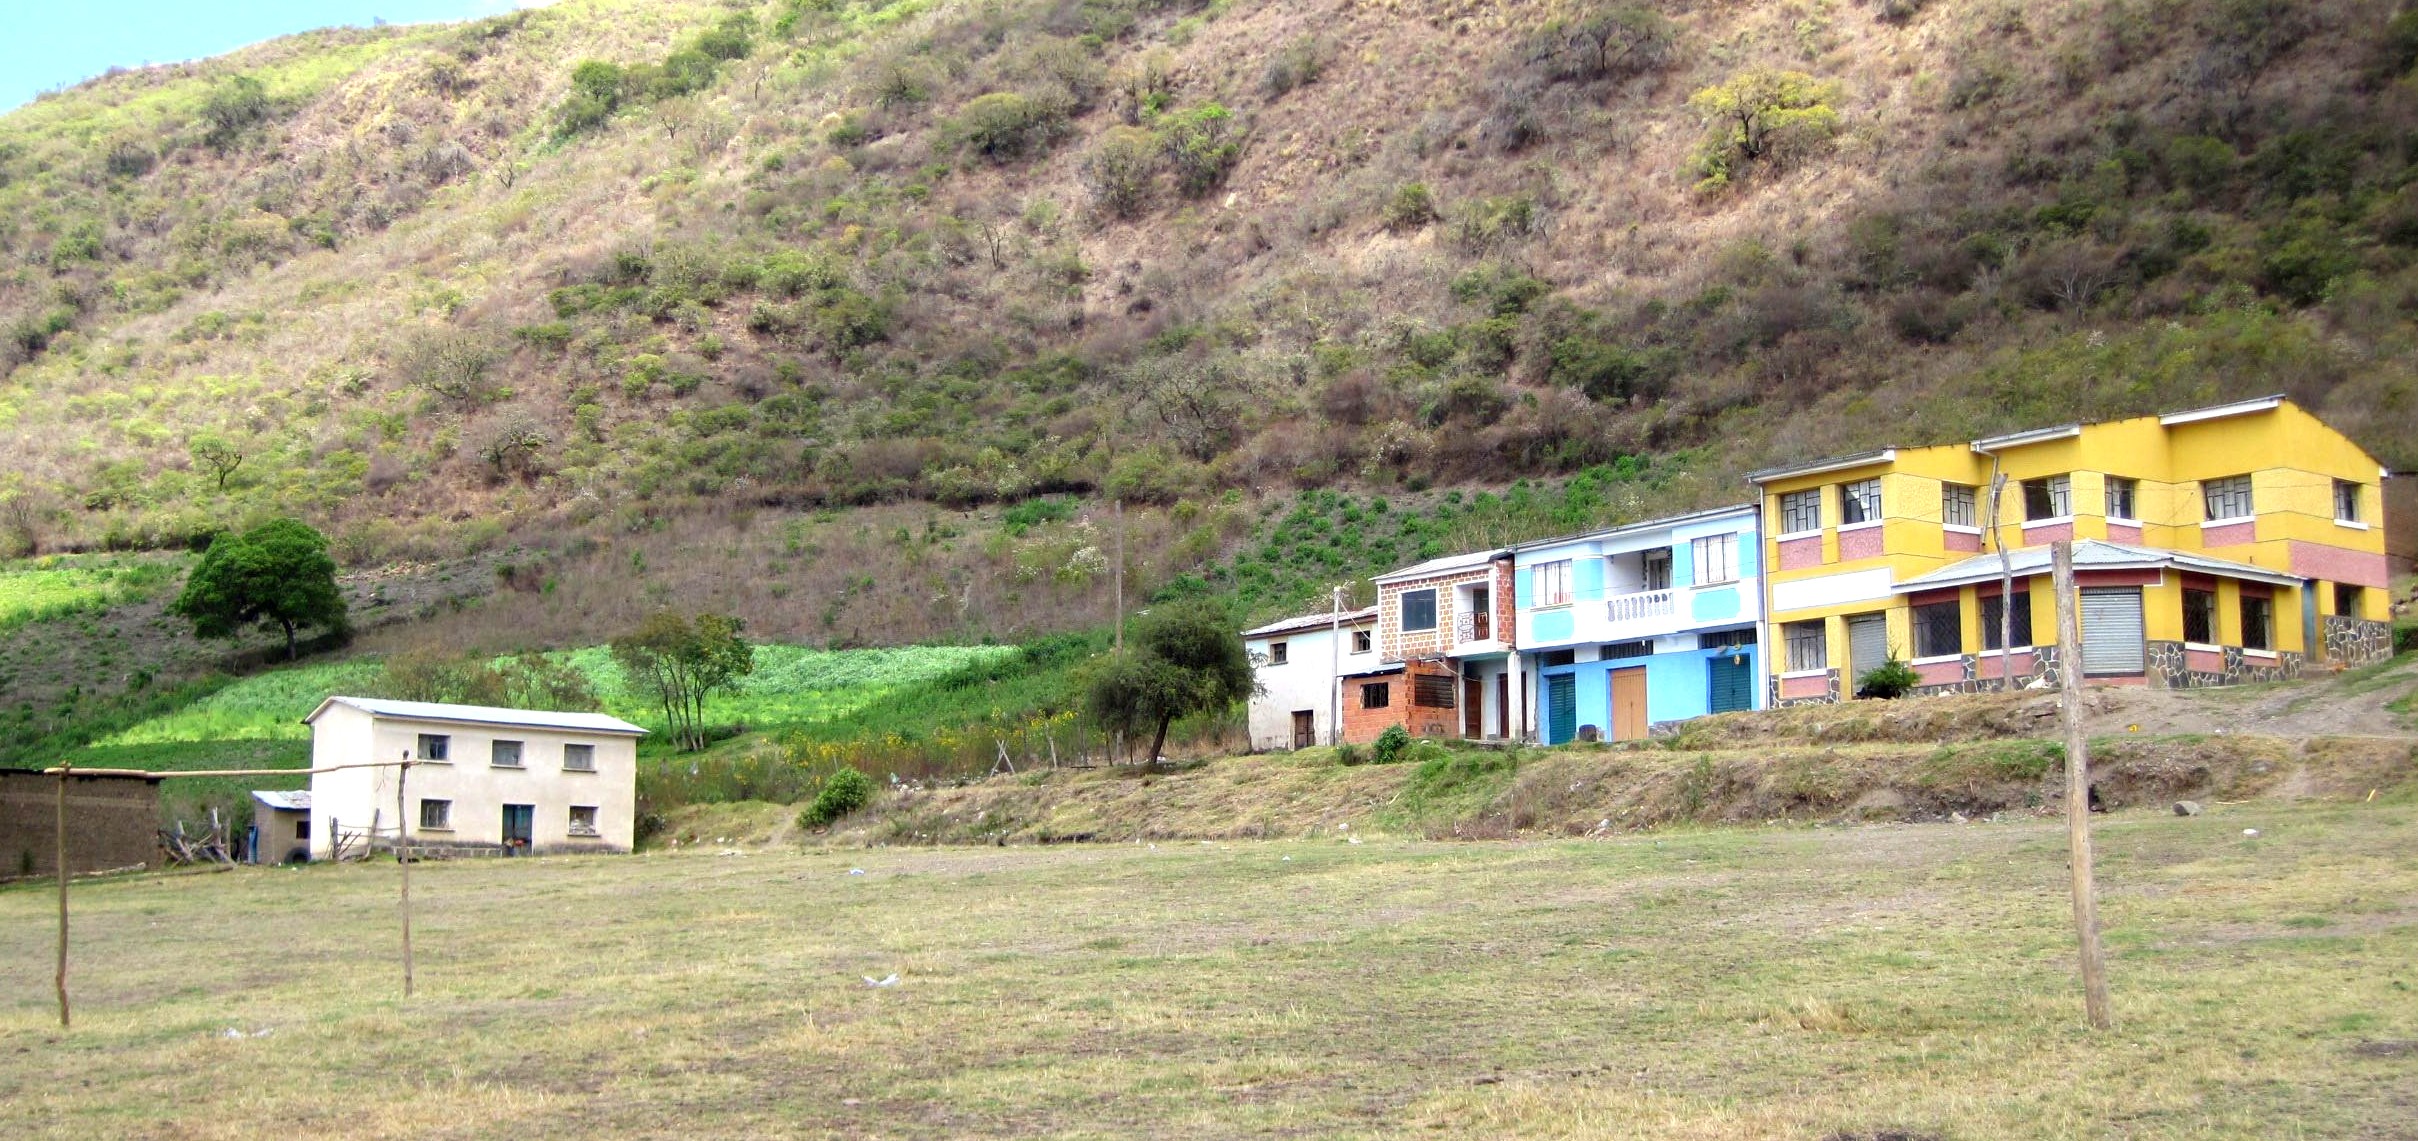 Travesía Coroico - Cochabamba, ruta Cajuata - Morochata, comunidad de Yacupampa.